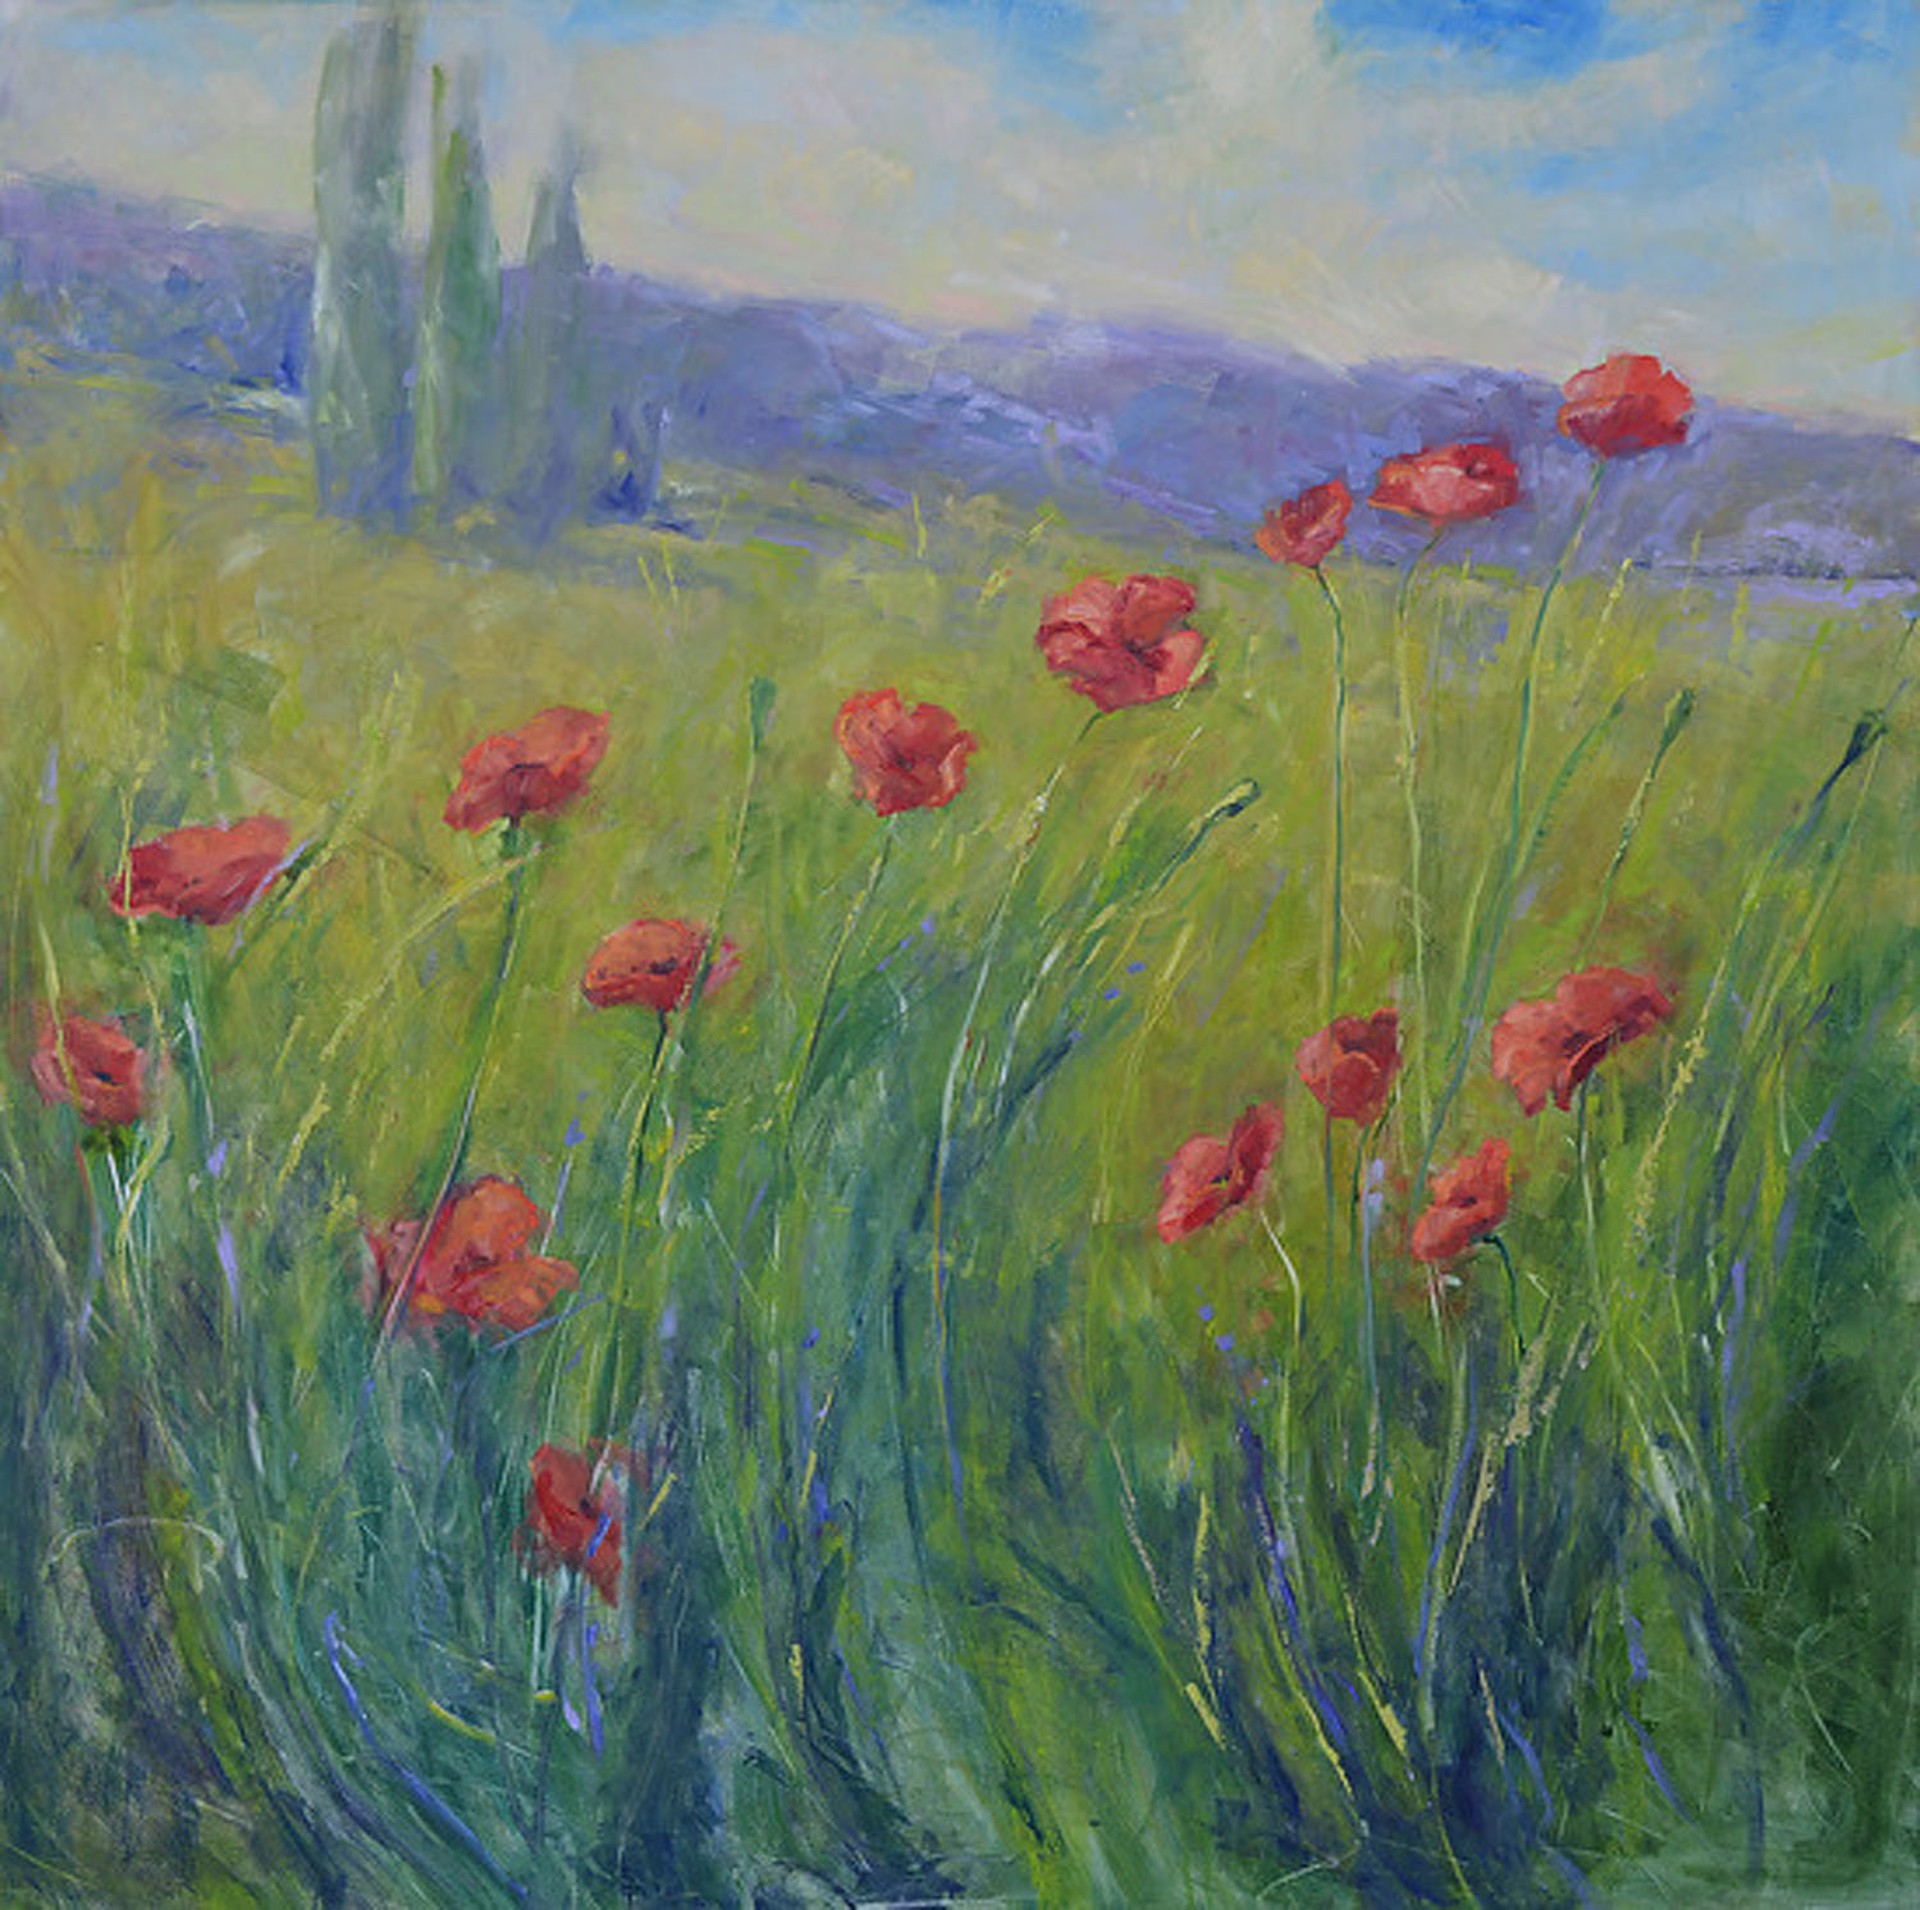 Poppies In the Breeze (Italian Poppies) by Karen Hewitt Hagan